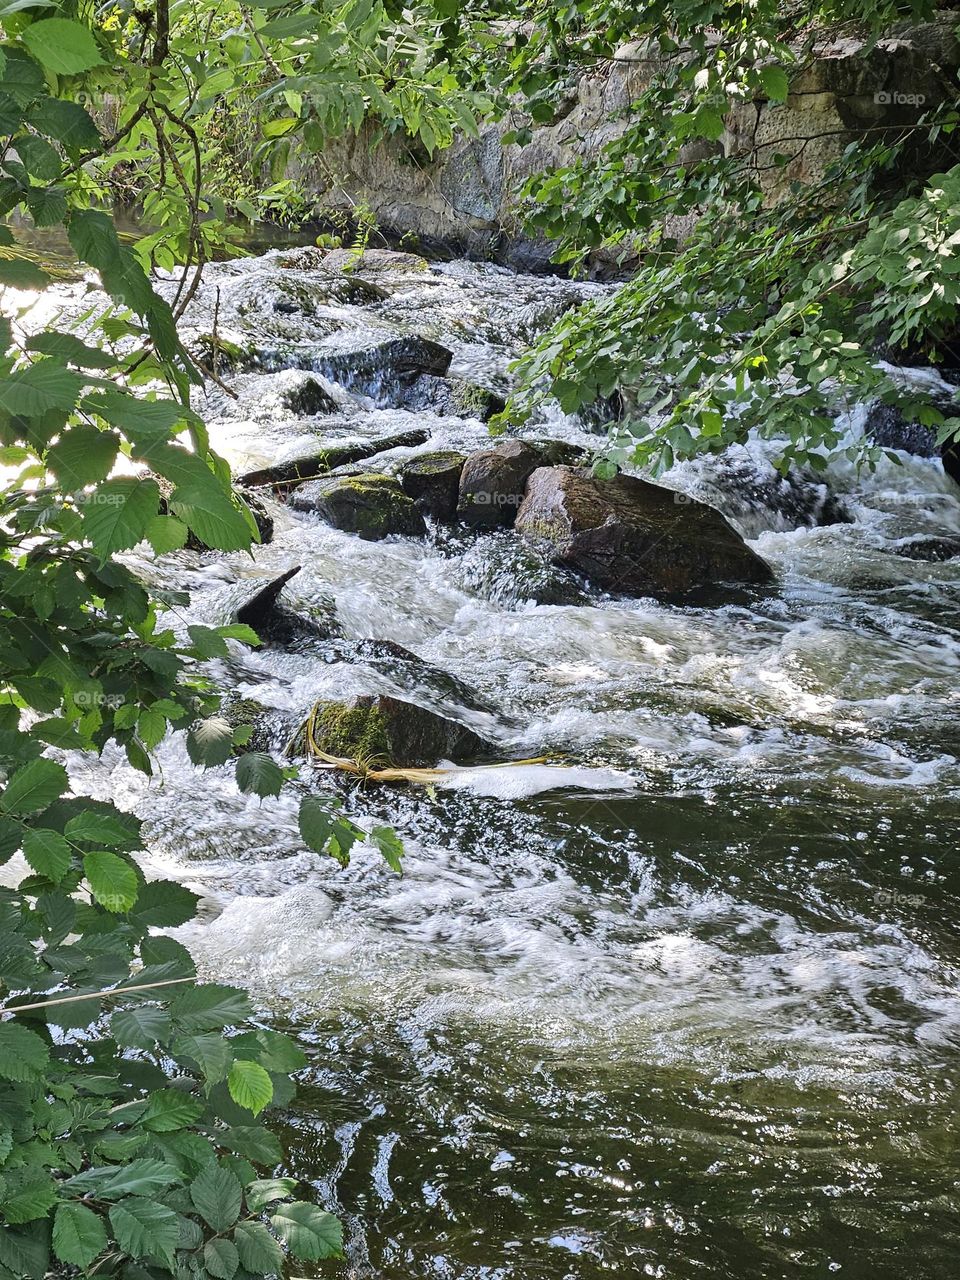 flowing water in the river of Rönne Å